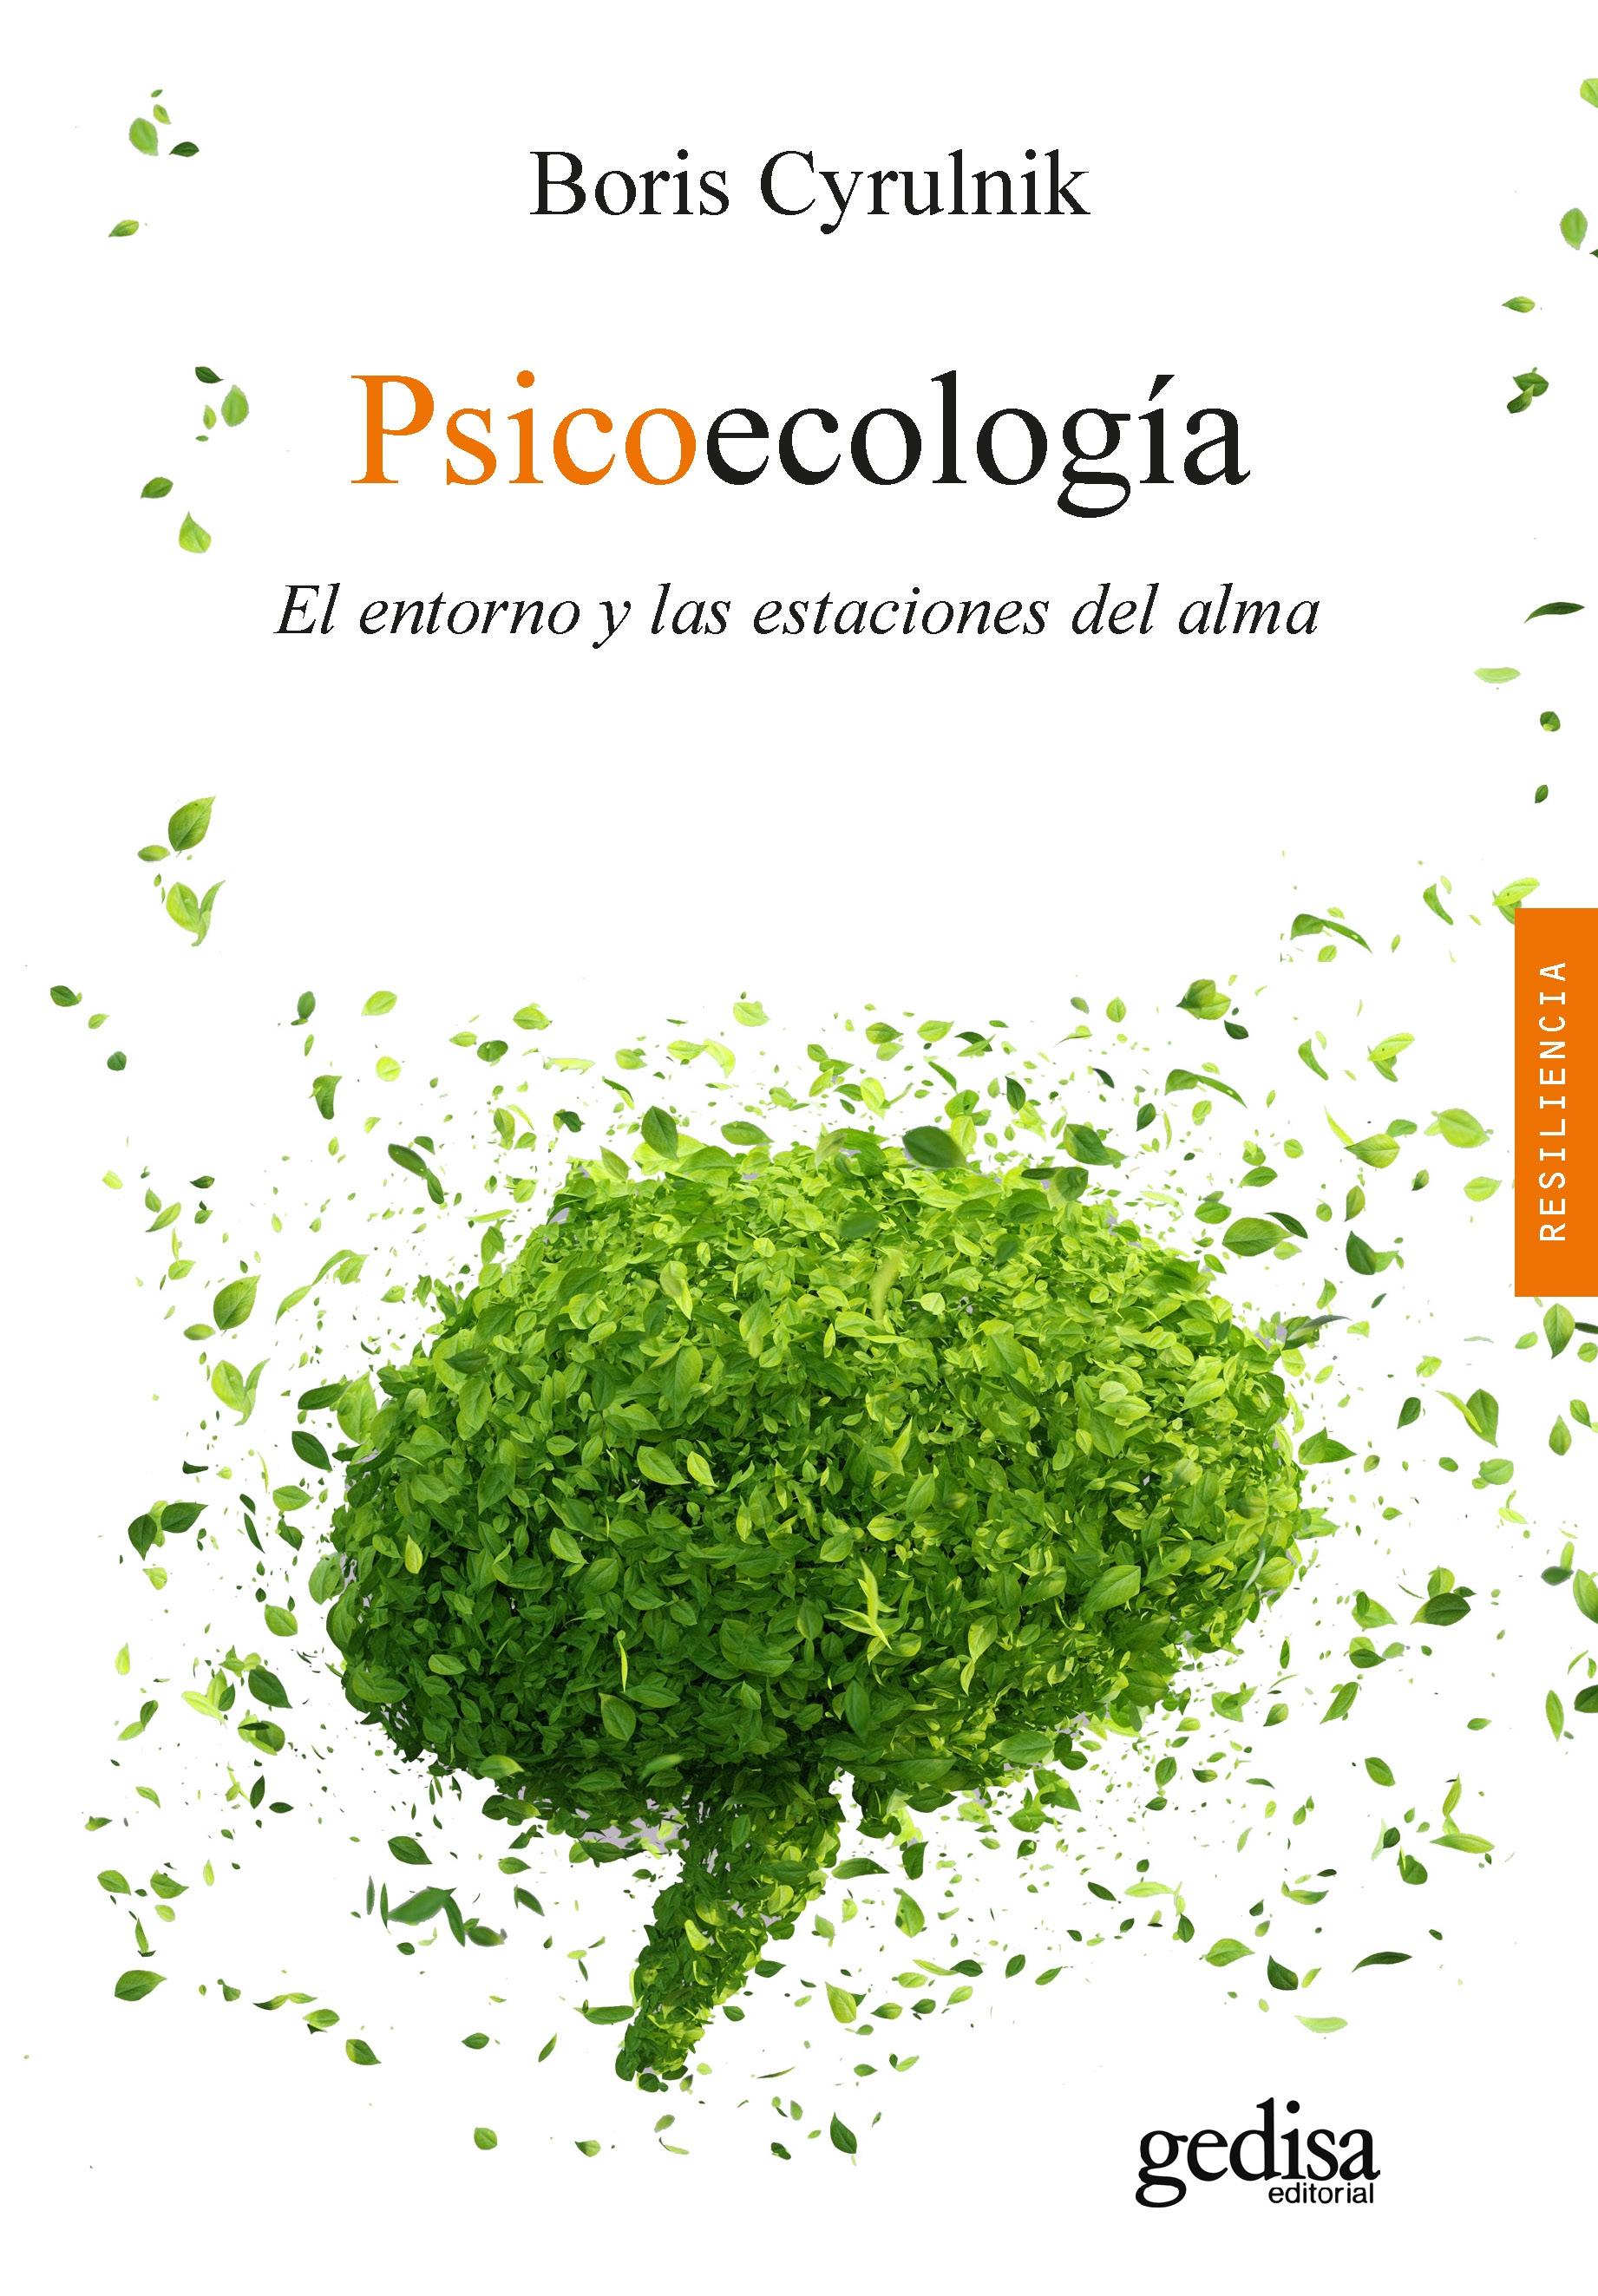 Psicoecología "El entorno y las estaciones del alma". 